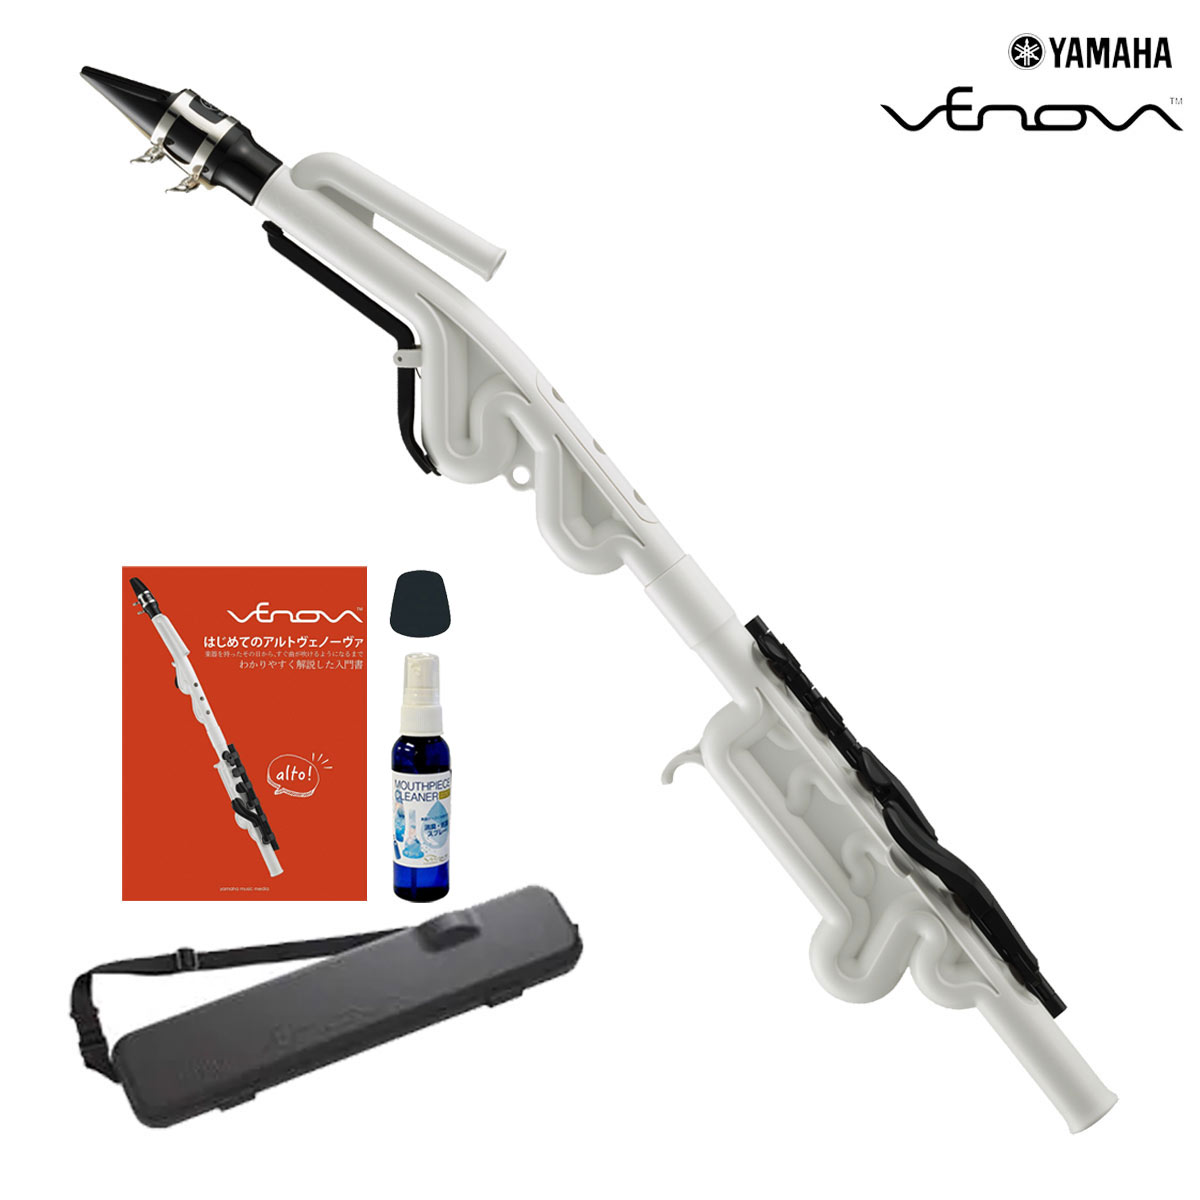 【あす楽対象商品】YAMAHA / YVS-120 Alto Venova アルト ヴェノーヴァ カジュアル管楽器 《オリジナルセット》《専…